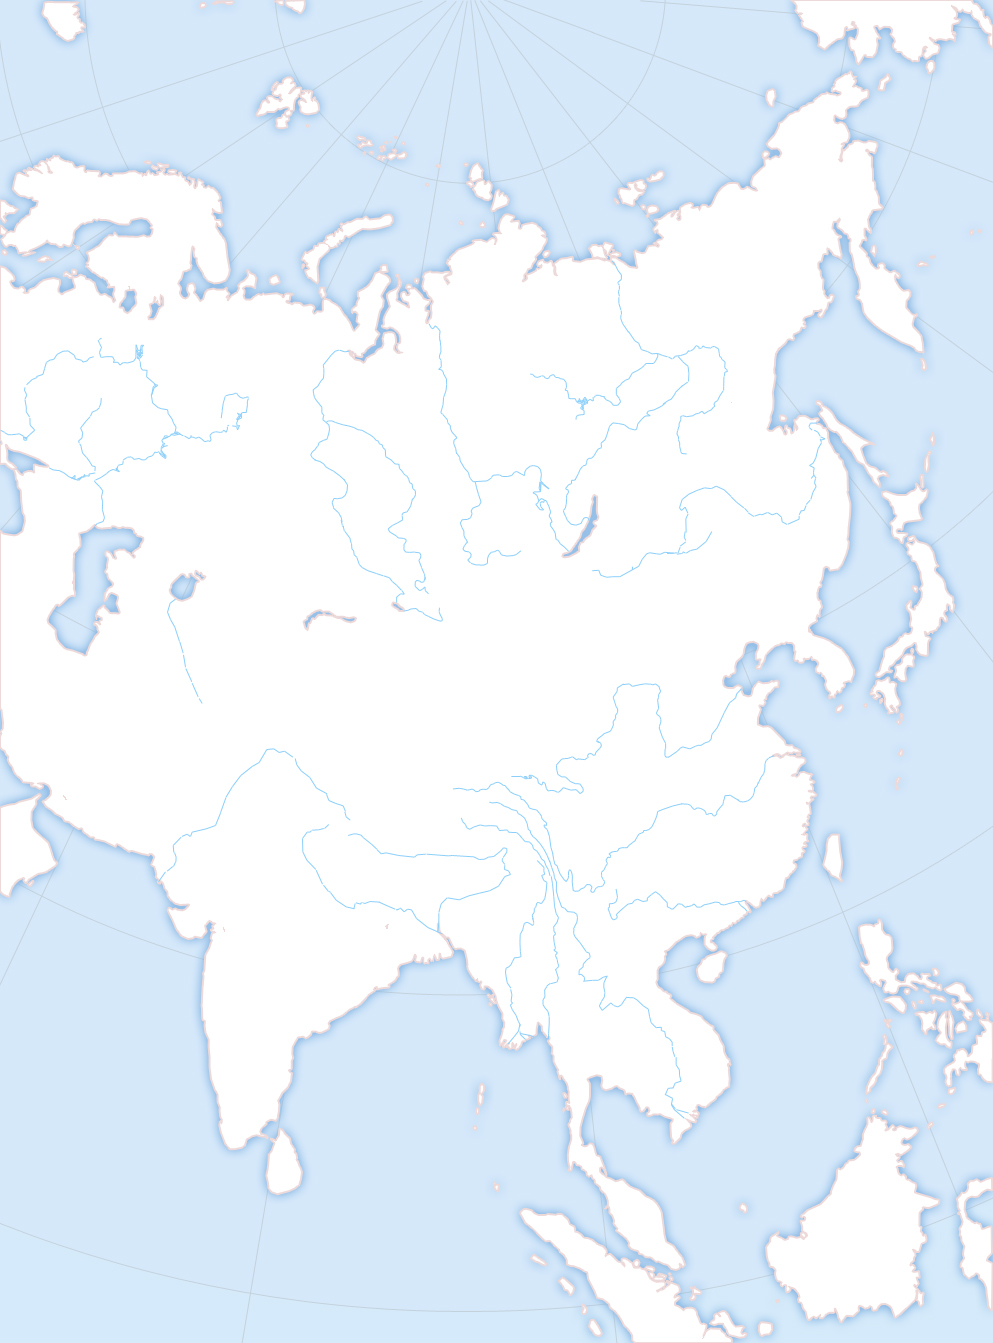 White asia. Пустая физическая карта Евразии. Карта Азии без границ для маппинга. Контурная карта Евразии с границами государств. Карта Евразии политическая белая.